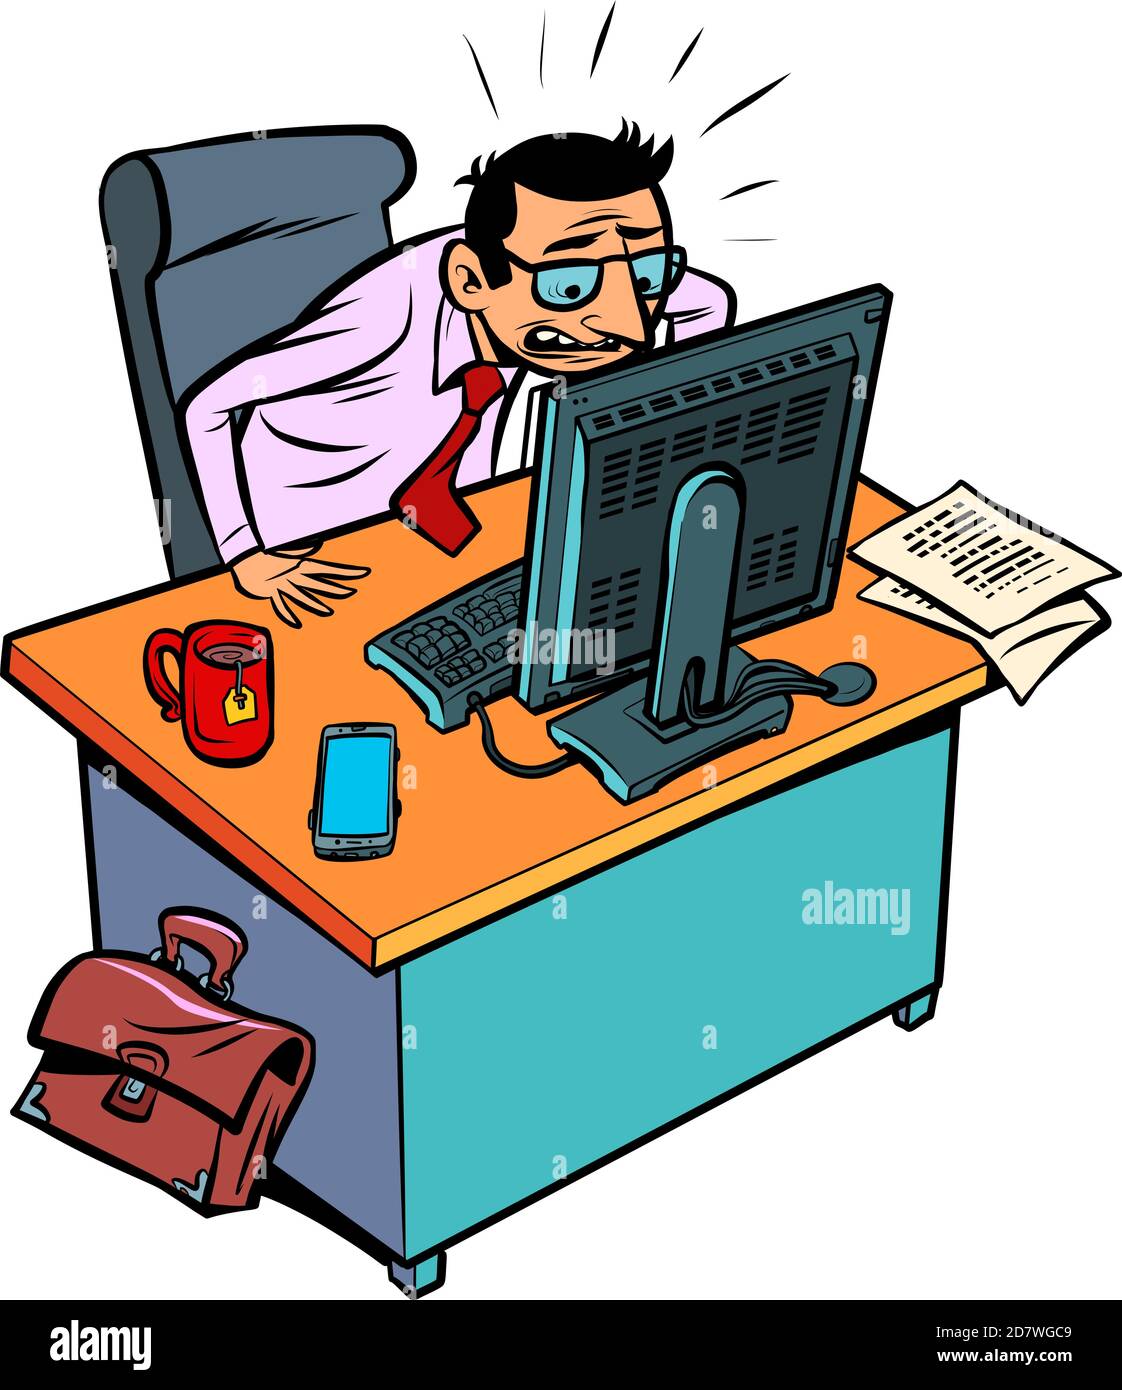 un homme d'affaires inquiet et en colère travaille dans un bureau de un ordinateur Illustration de Vecteur